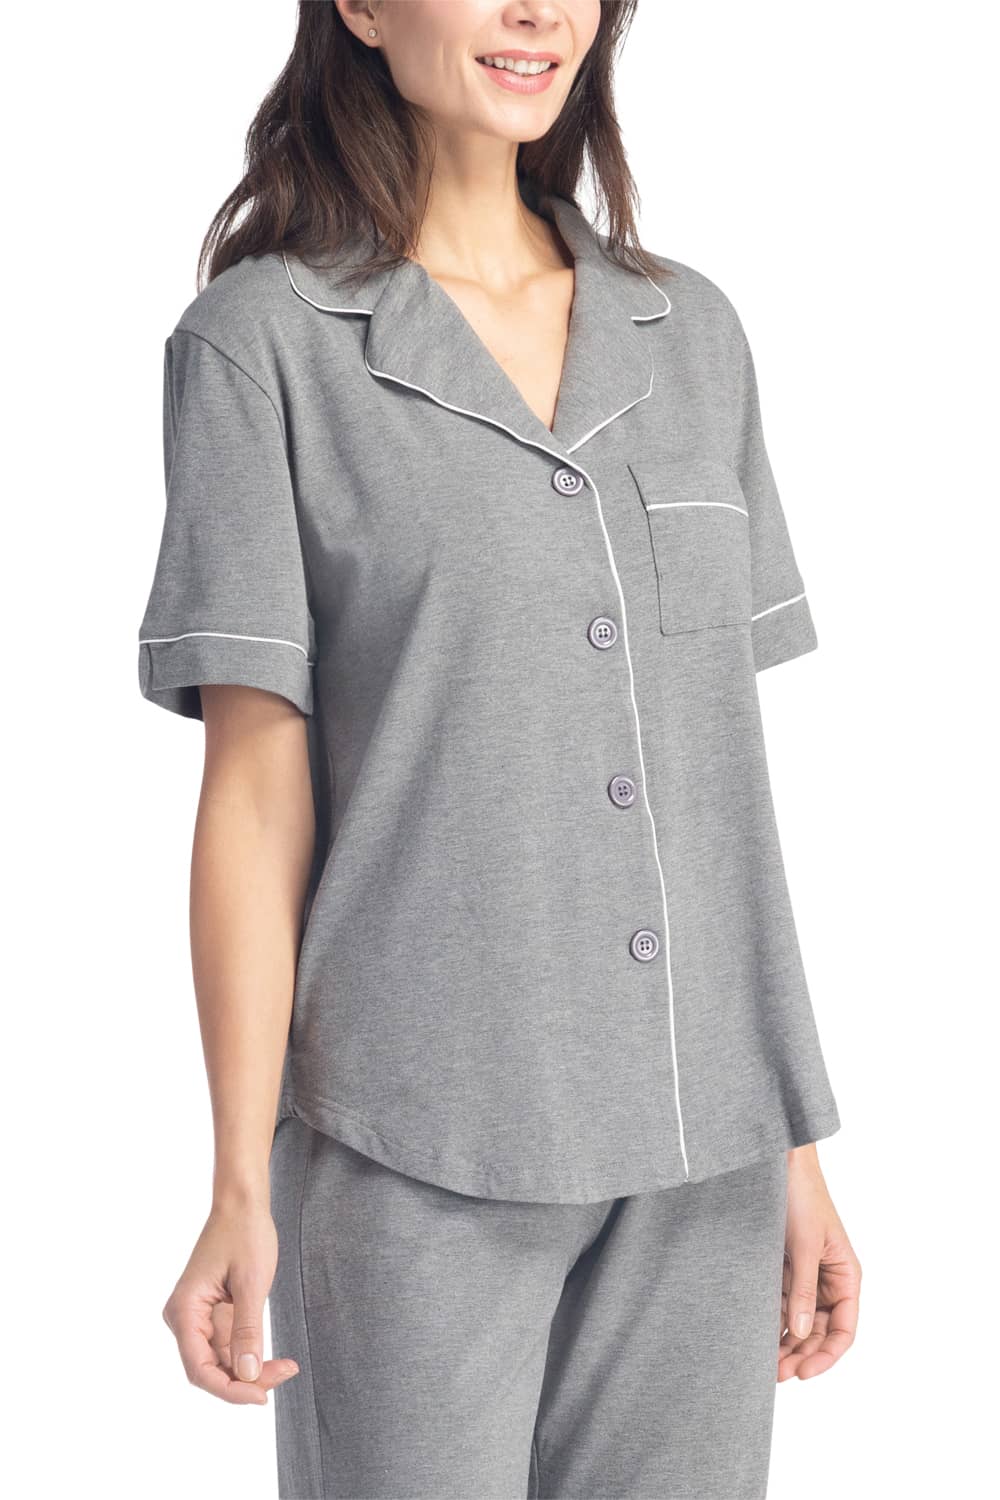 Cozy Capri Pajama Set - Gray 3X in Women's Cotton Pajamas